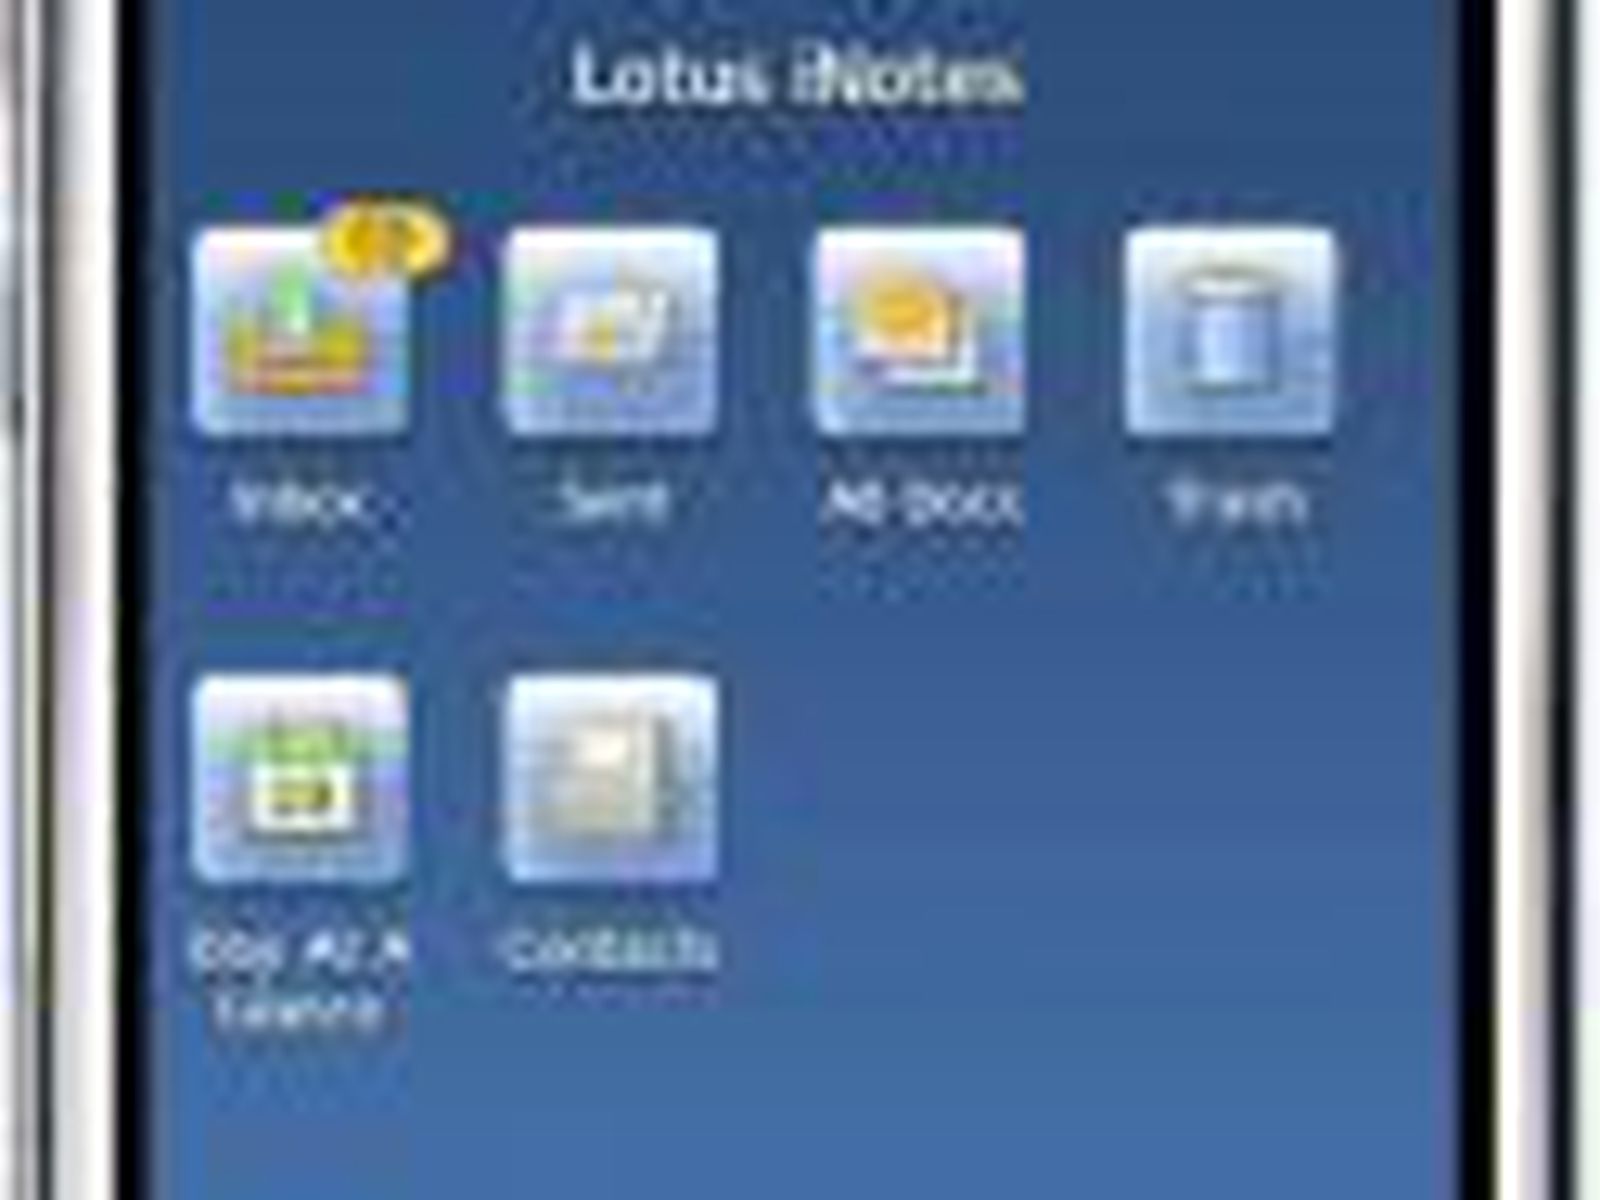 IBM Previews Lotus iNotes For iPhone - MacRumors